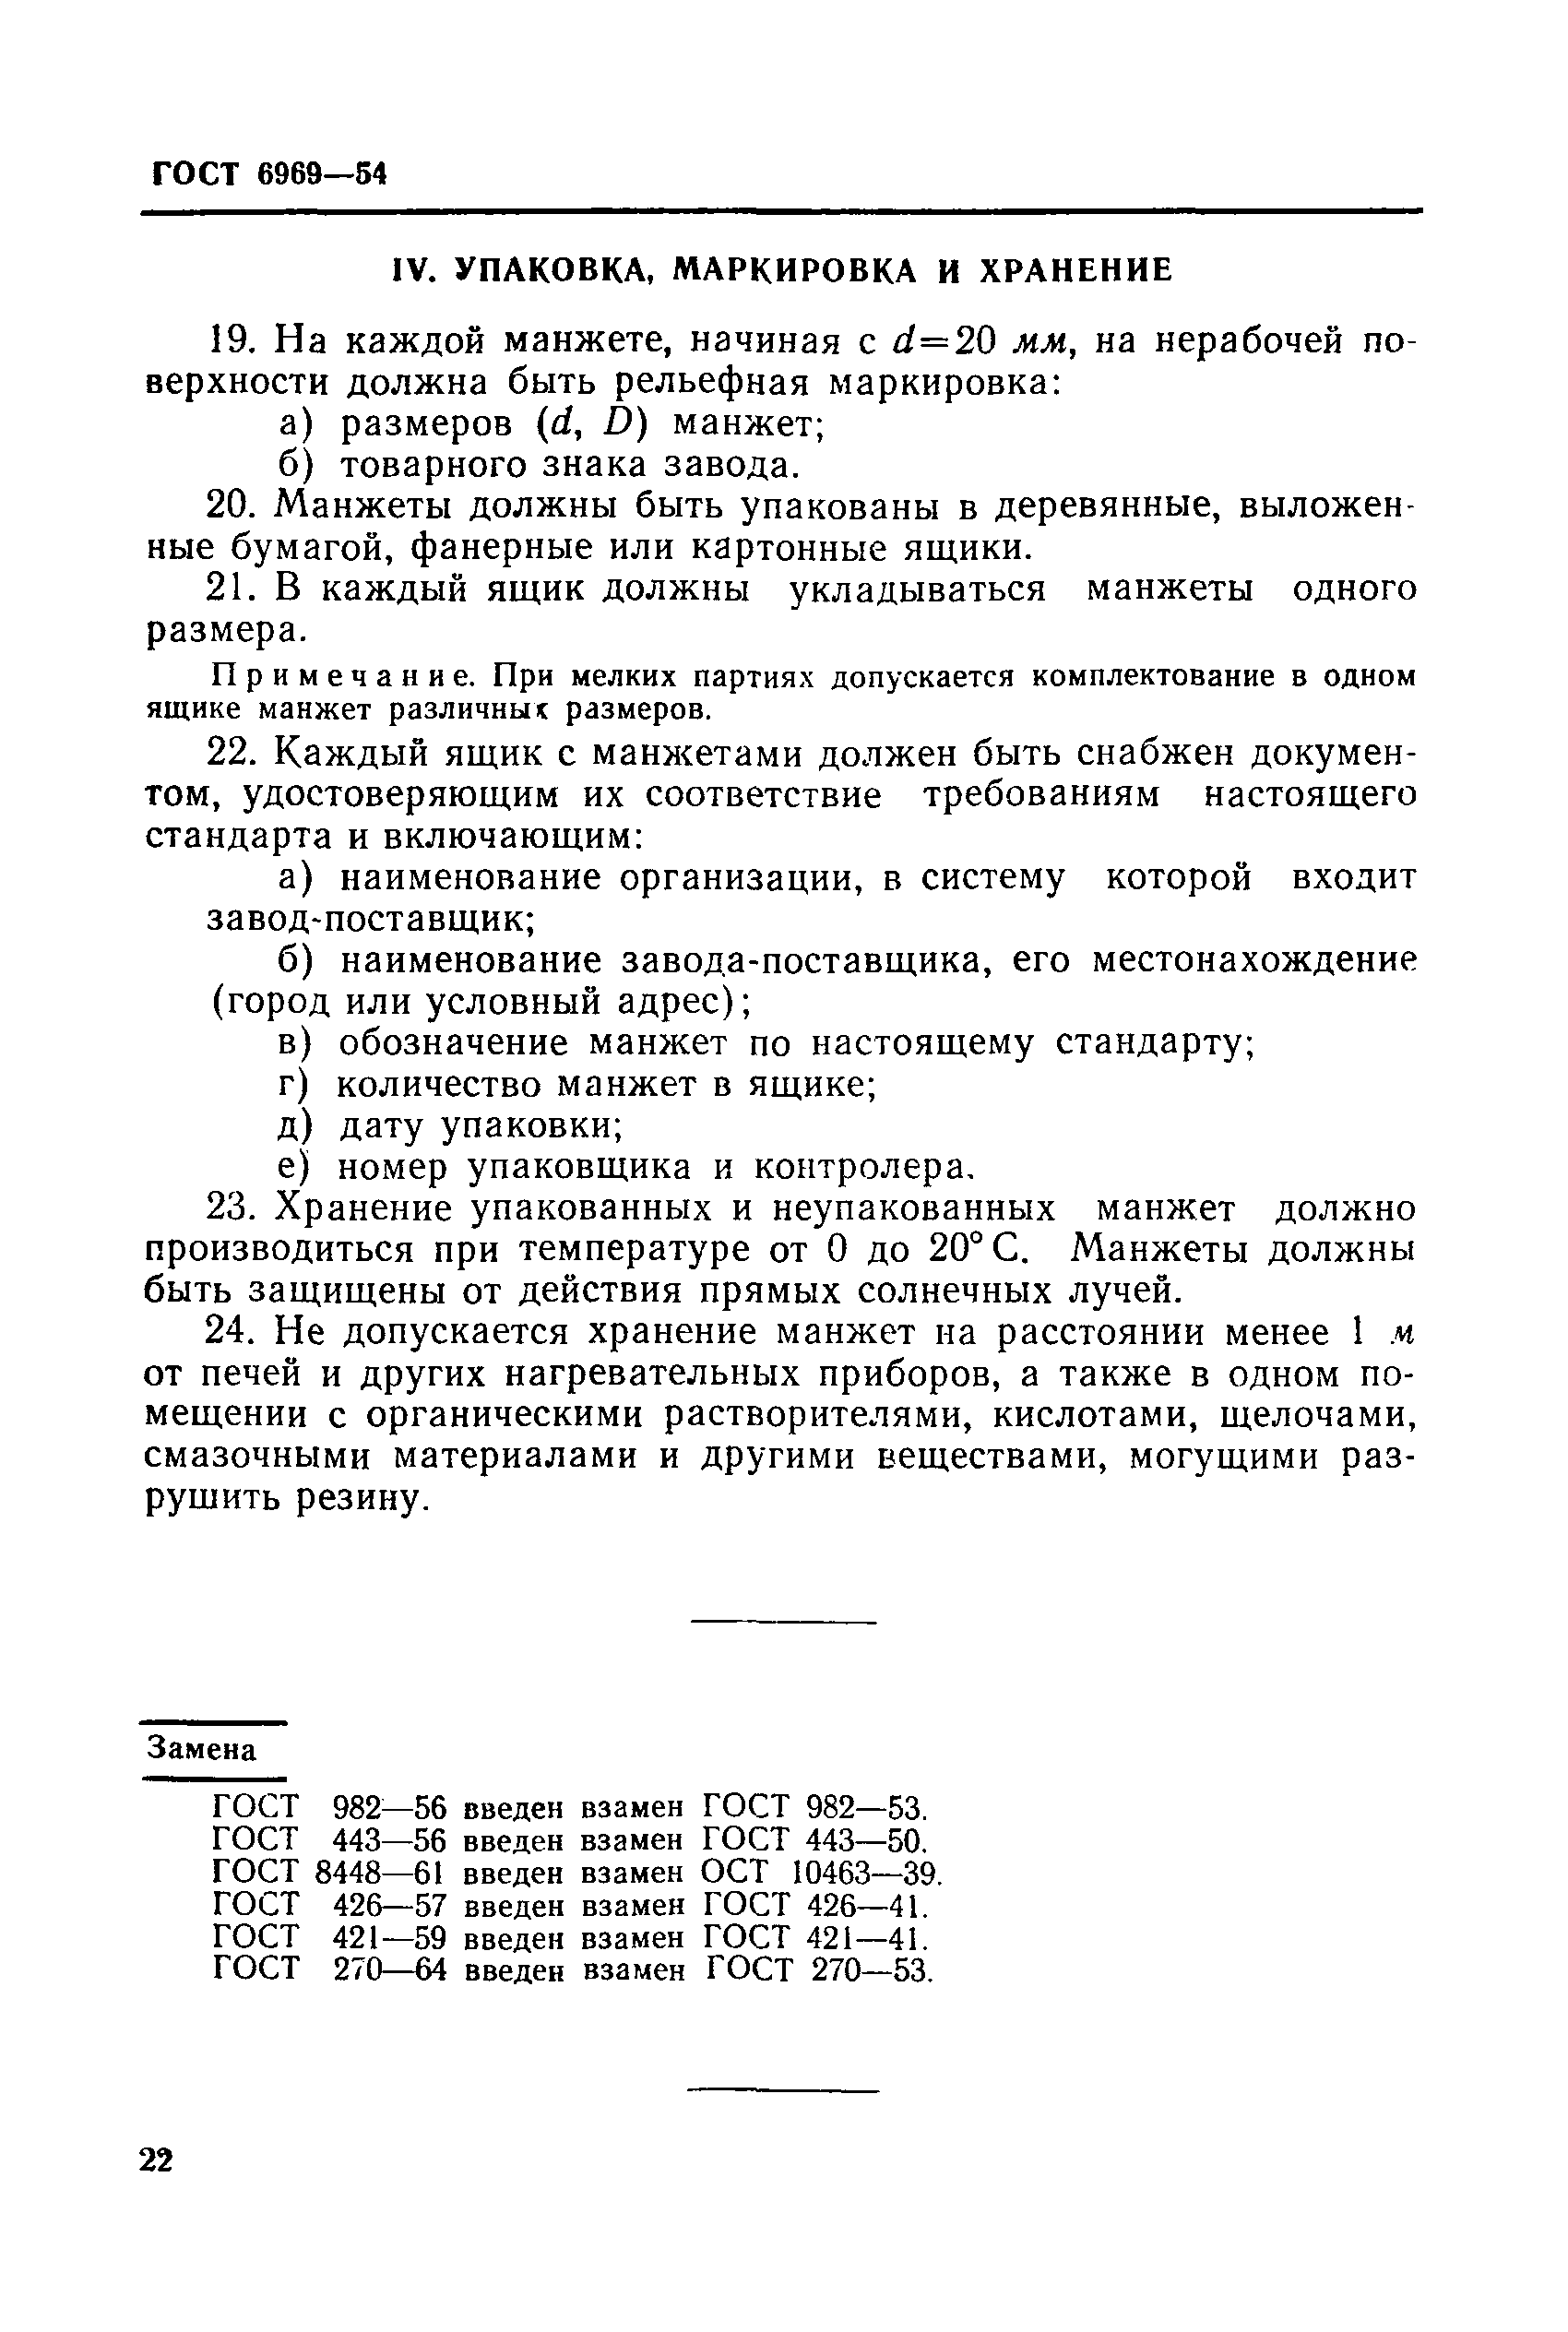 Манжета гидравлическая ТУ 38-1051725-86 (ГОСТ 6969-54)